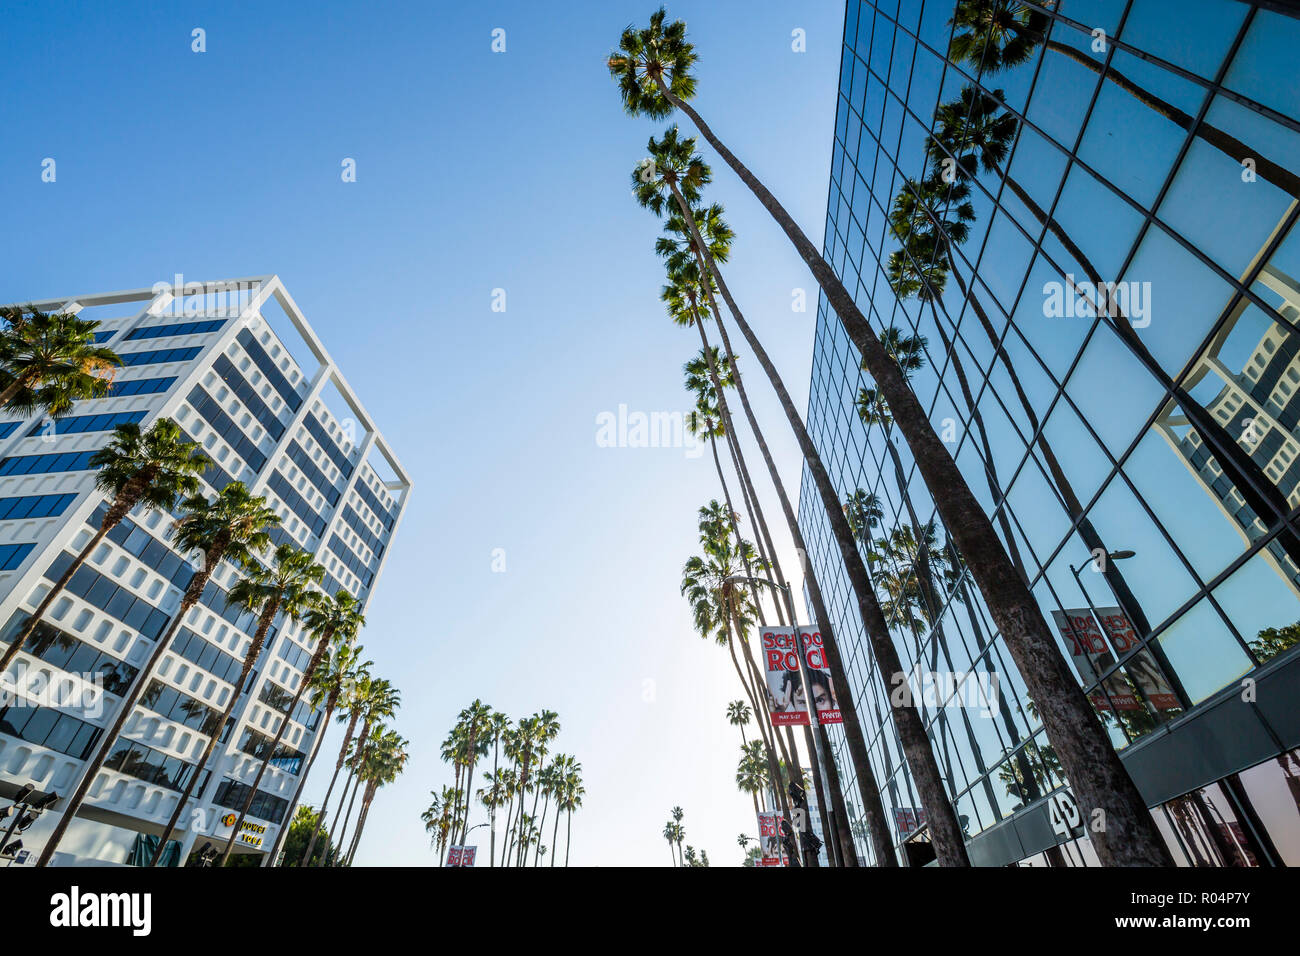 Vista de palmeras y arquitectura contemporánea en Hollywood Boulevard, Los Angeles, California, Estados Unidos de América, América del Norte Foto de stock